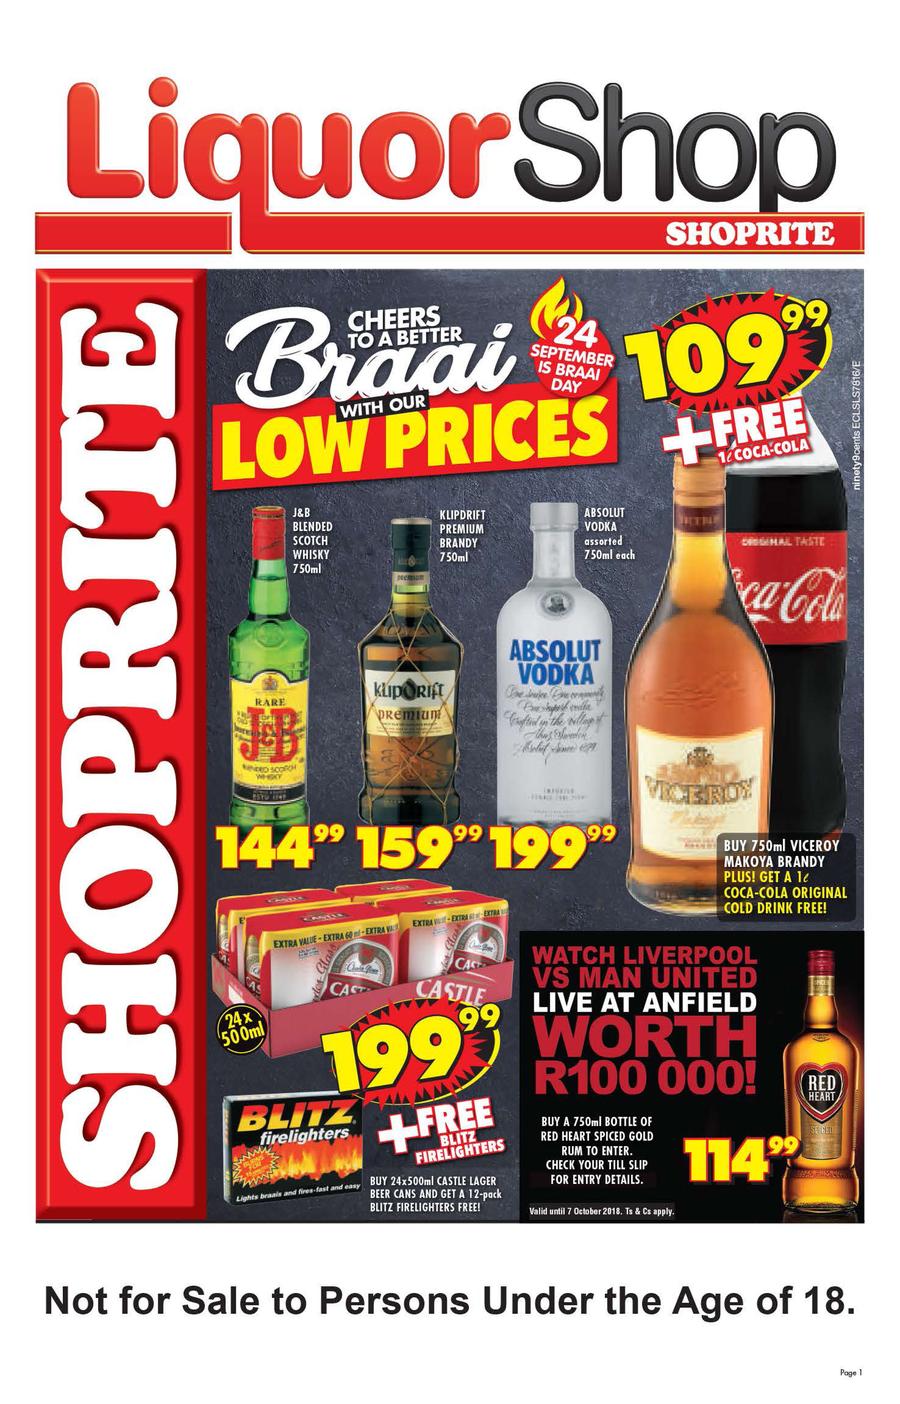 Shoprite Eastern Cape Liquor Shop 20 Sep 07 Oct 2018 Www Guzzle Co Za